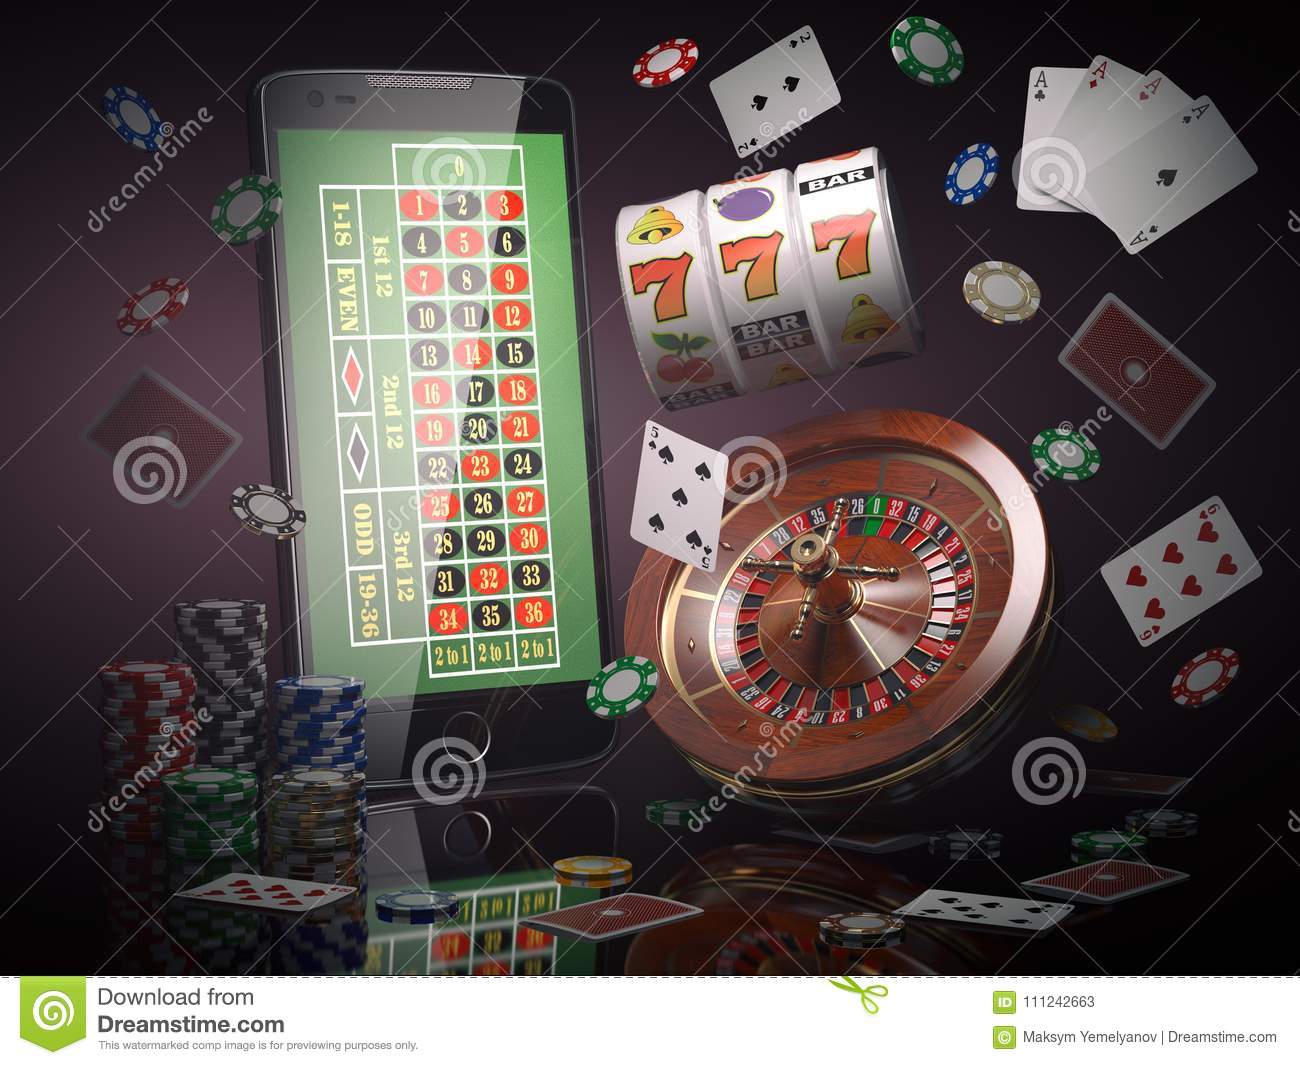 No deposit casinos bonus codes